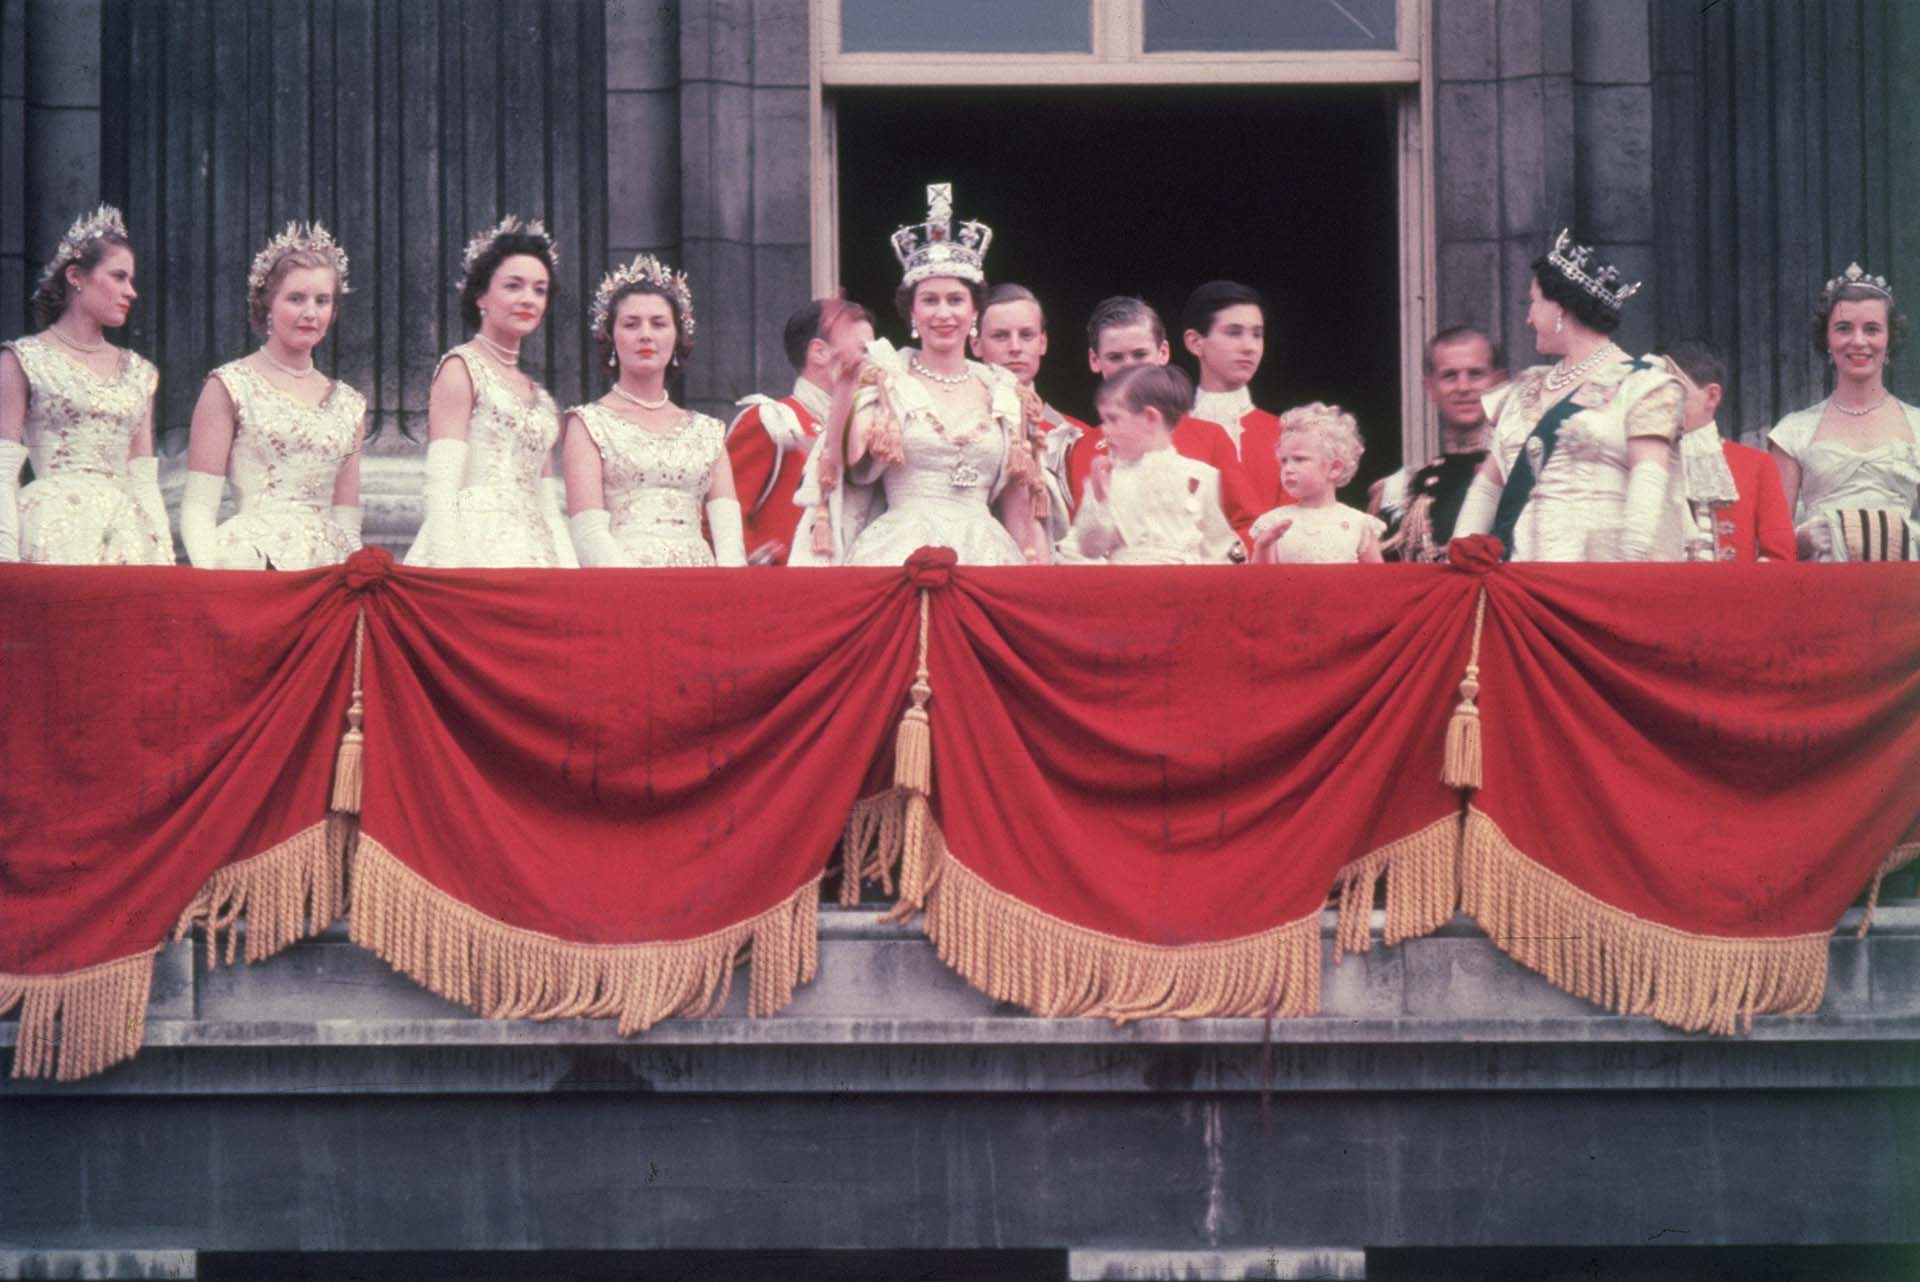 La ceremonia oficial fue preparada durante 14 meses y requirió de la formación de varios comités para su programación. La primera reunión de la Comisión de la Coronación -ocurrida en abril de 1952- fue presidida por el príncipe Felipe, duque de Edimburgo (Hulton Archive/Getty Images)